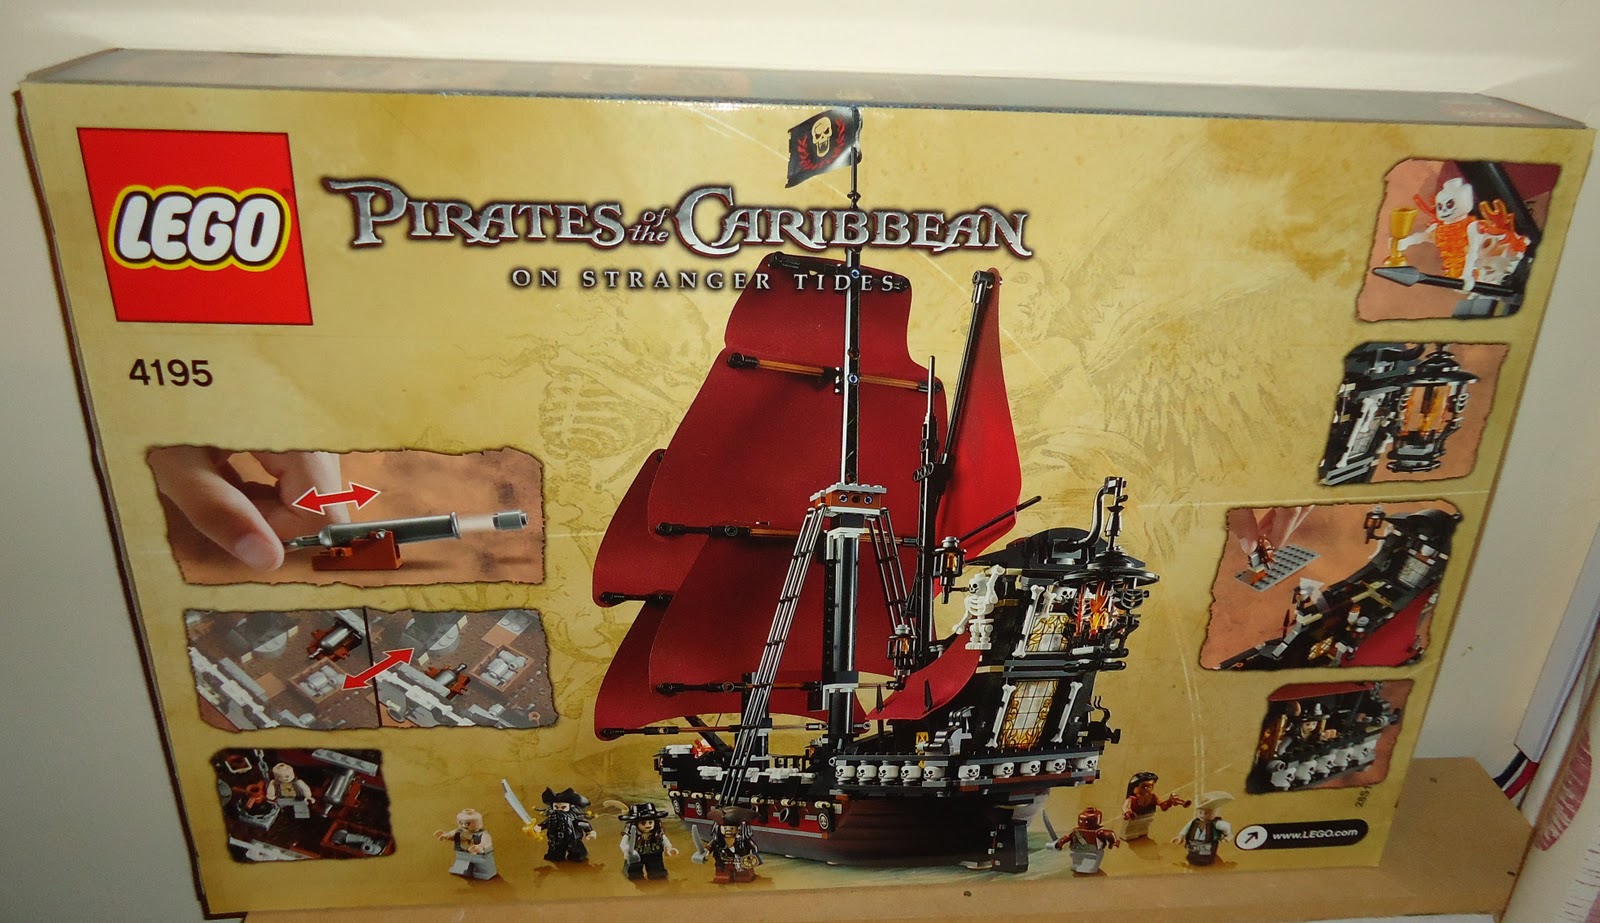 http://1.bp.blogspot.com/-UrMV9ylBIk8/Tte-WbZruZI/AAAAAAAAF_c/BTf48ee6-Fw/s1600/Pirates+of+the+Caribbean+On+Stranger+Tides+Lego+Set+Queen+Annes+Revenge.JPG